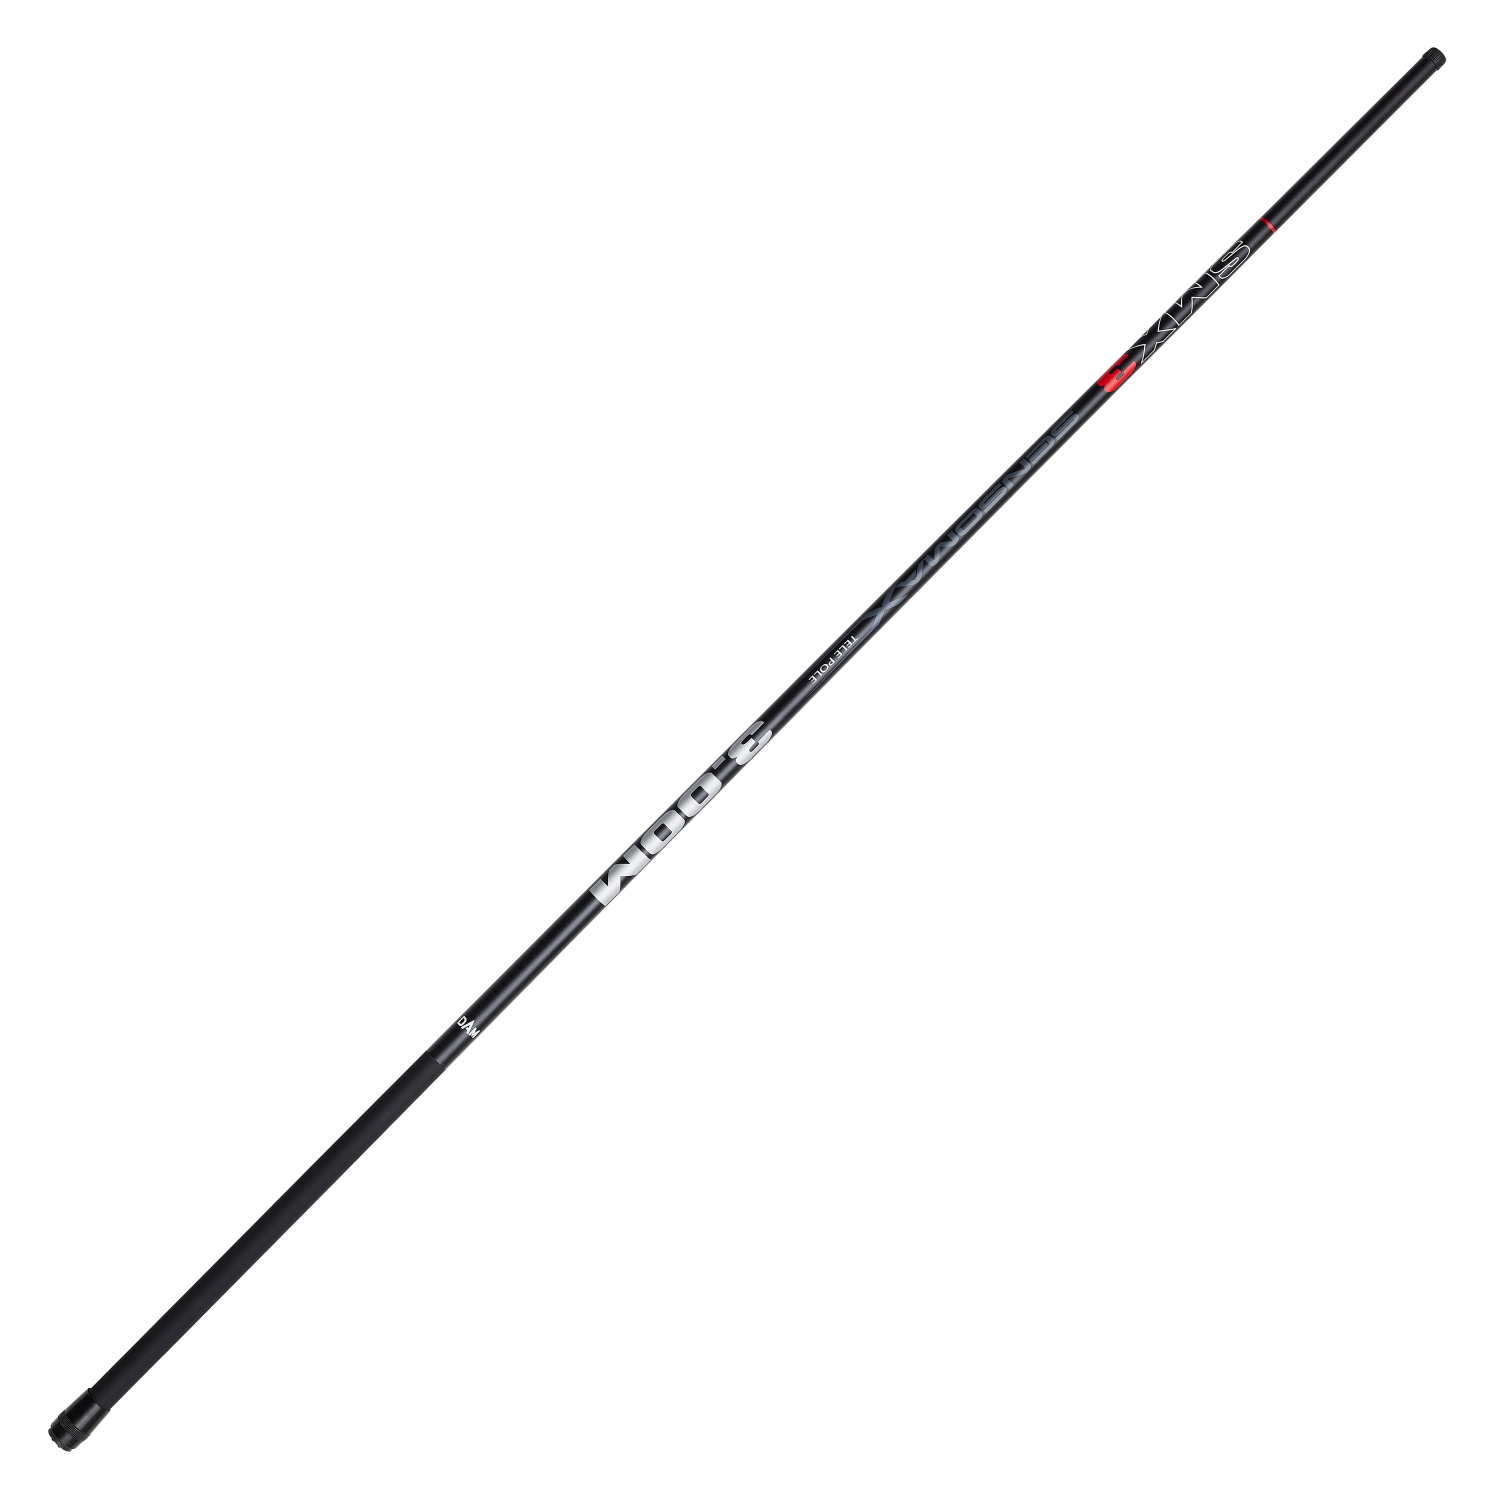 DAM Pole fishing rod Tele Poles Sensomax 